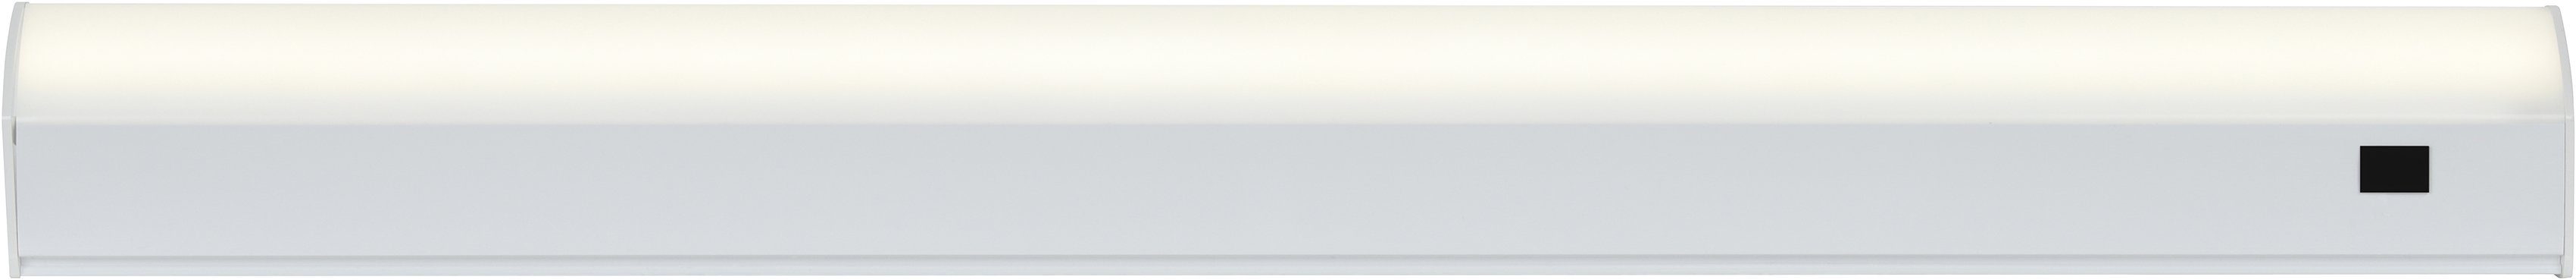 Nordlux Unterschrankleuchte Bity, LED fest integriert, Warmweiß, inkl. 6W LED, 530 Lumen, inkl. Bewegungssensor | Unterbauleuchten